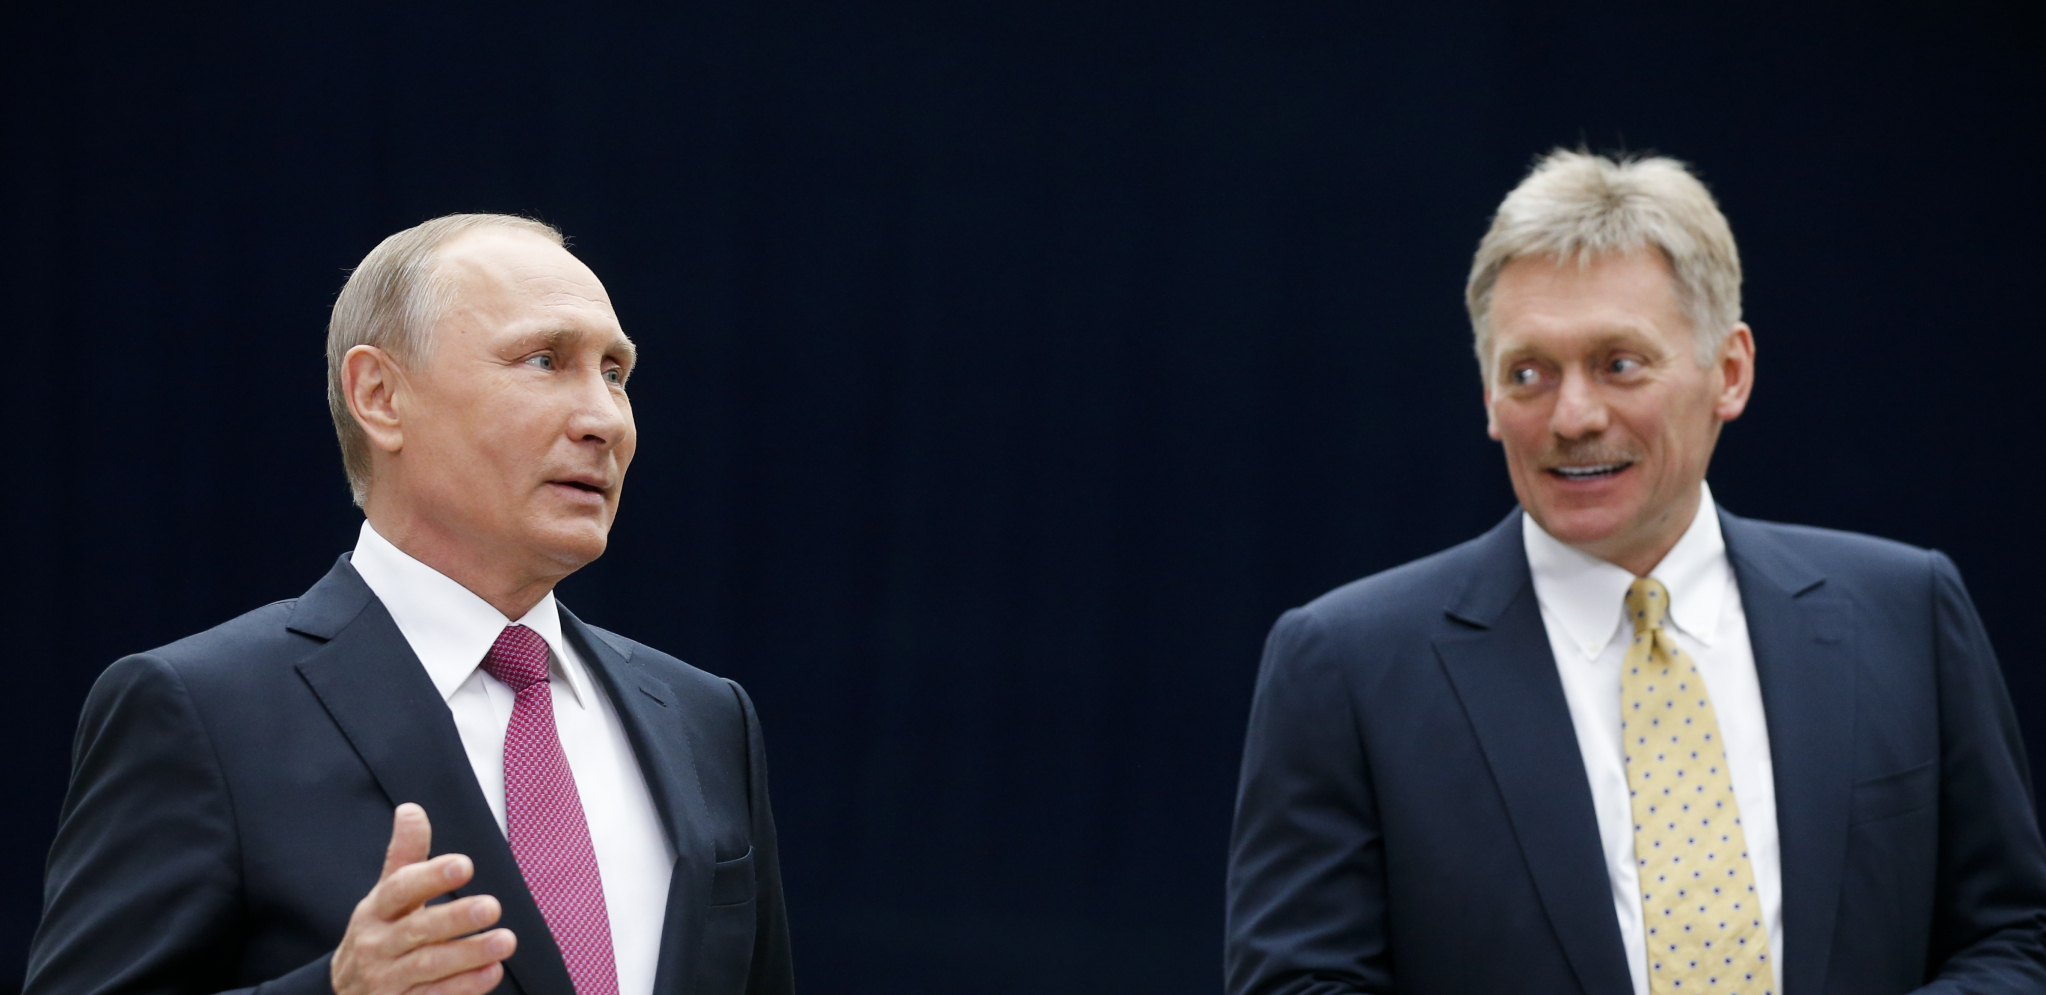 AMERIKA OSTAJE NA SPISKU NEPRIJATELJA! Kremlj se oglasio nakon sastanka Putina i Bajdena!